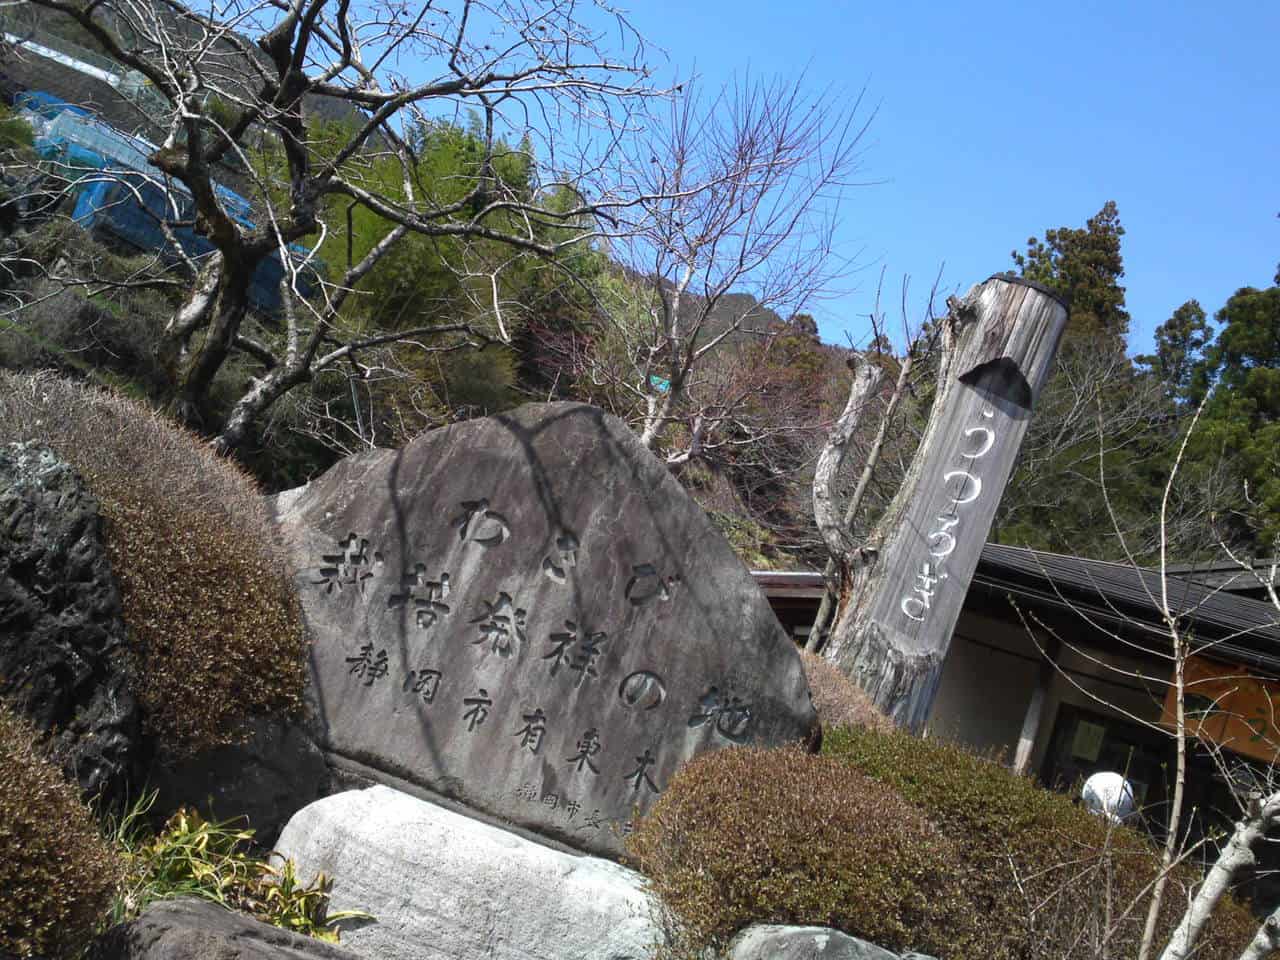 Soba, Wasabi Leaf Tempura, Utsurogi, shizuoka